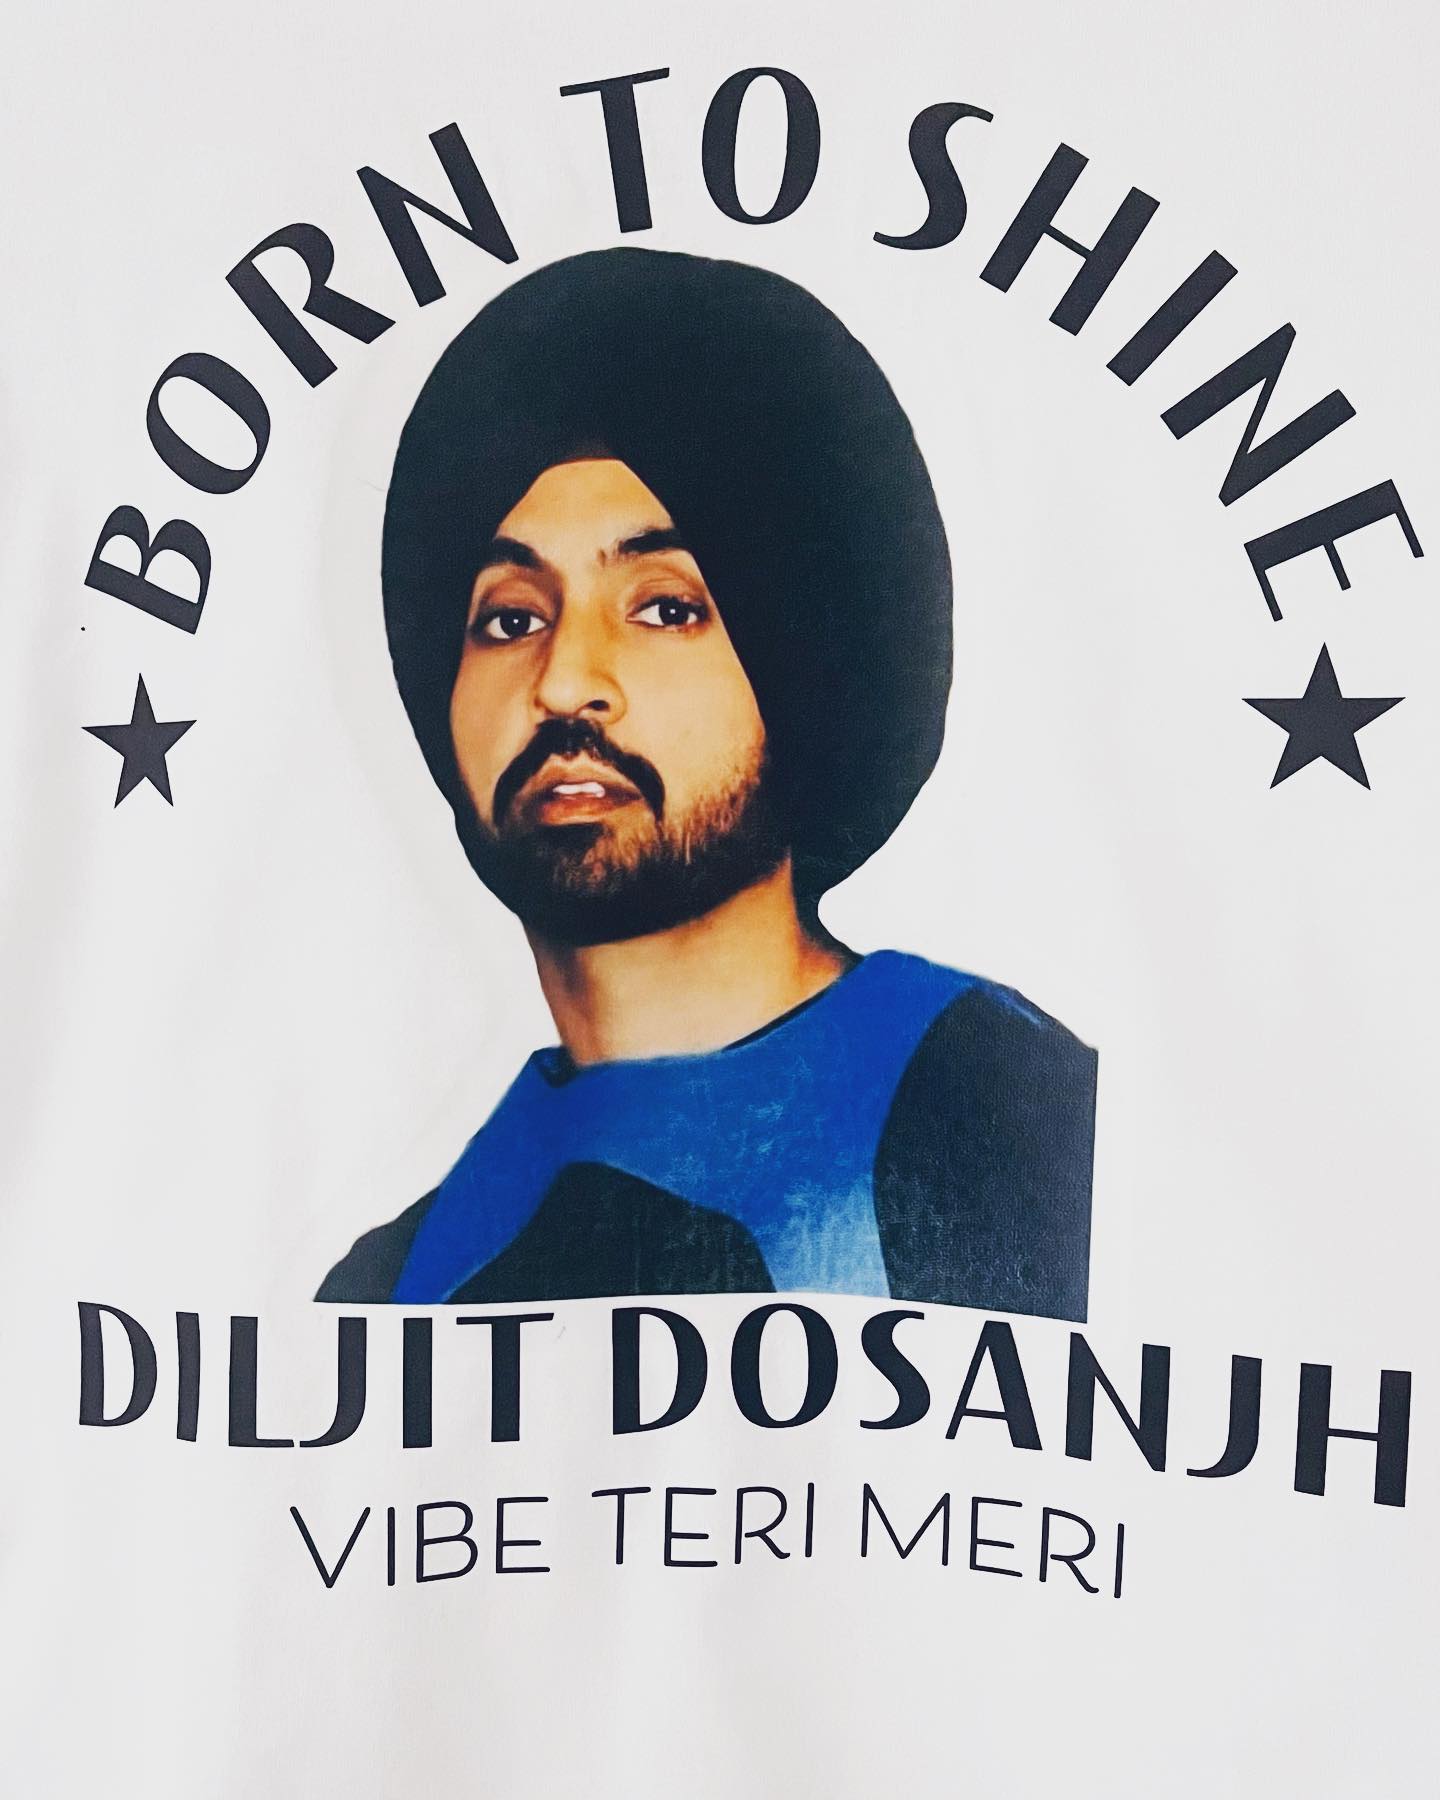 LegendaryLabz Diljit Dosanjh Goat, Clash, Vibe Teri Meri mildi AA, Born to Shine, USA Tour Punjabi Artist T-Shirt Men Women Apparel